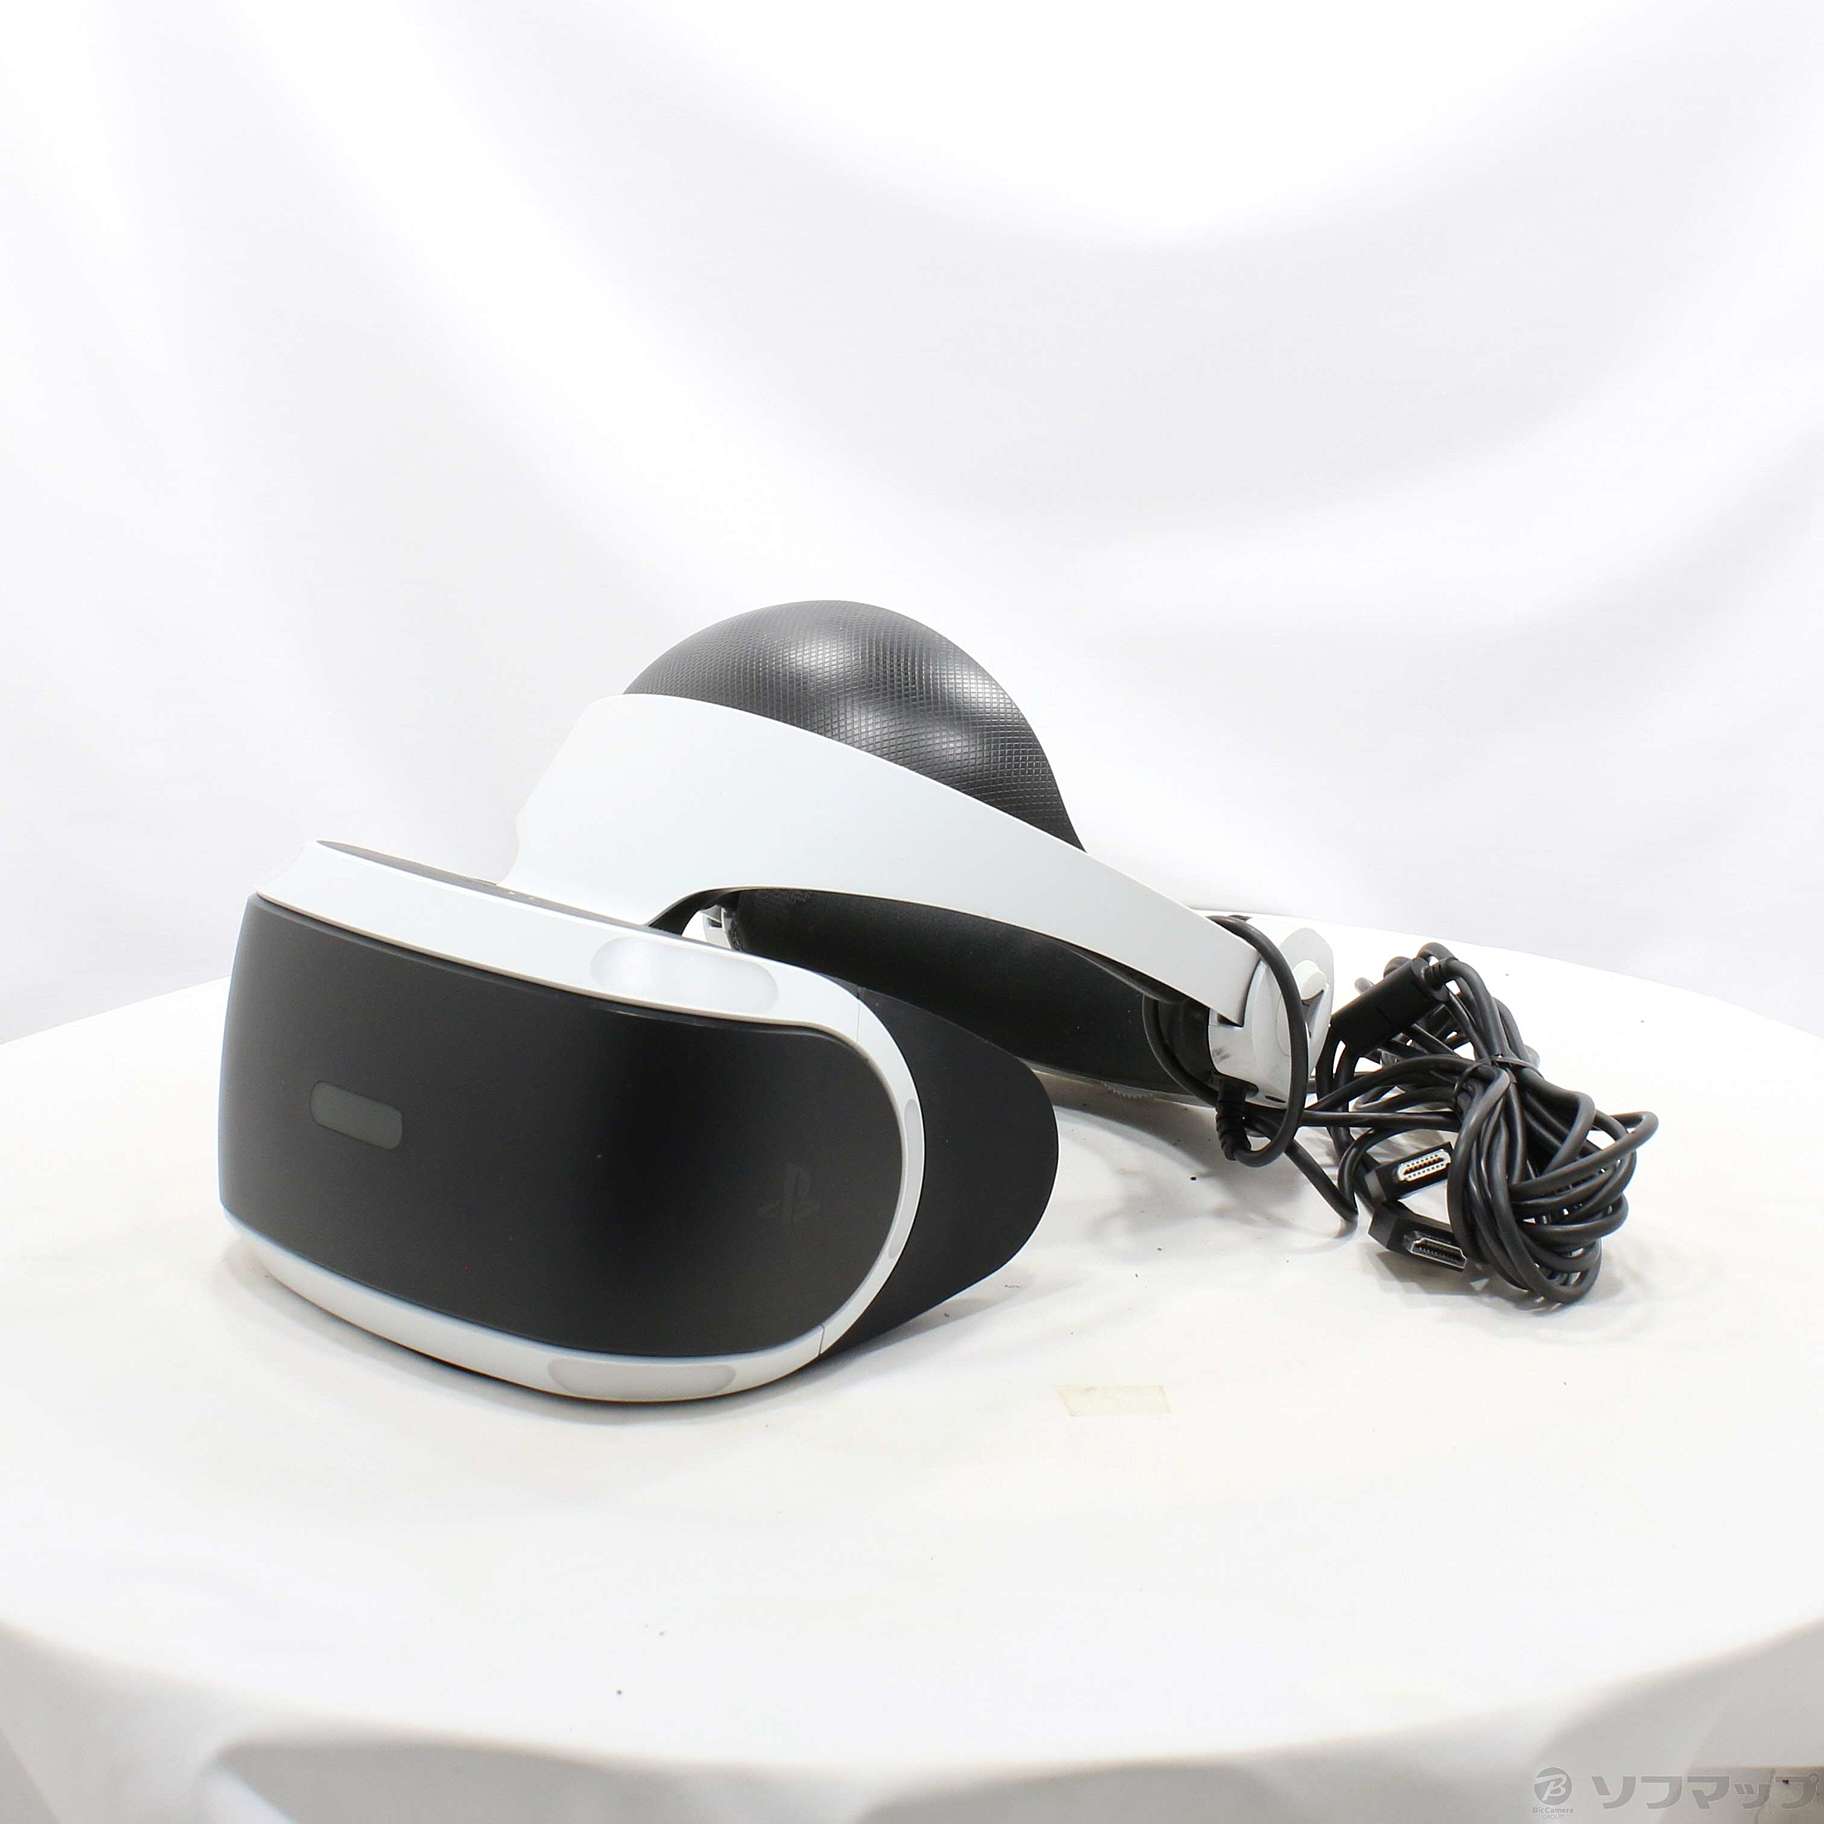 PlayStation VR PlayStation Camera 同梱版 CUHJ-16003